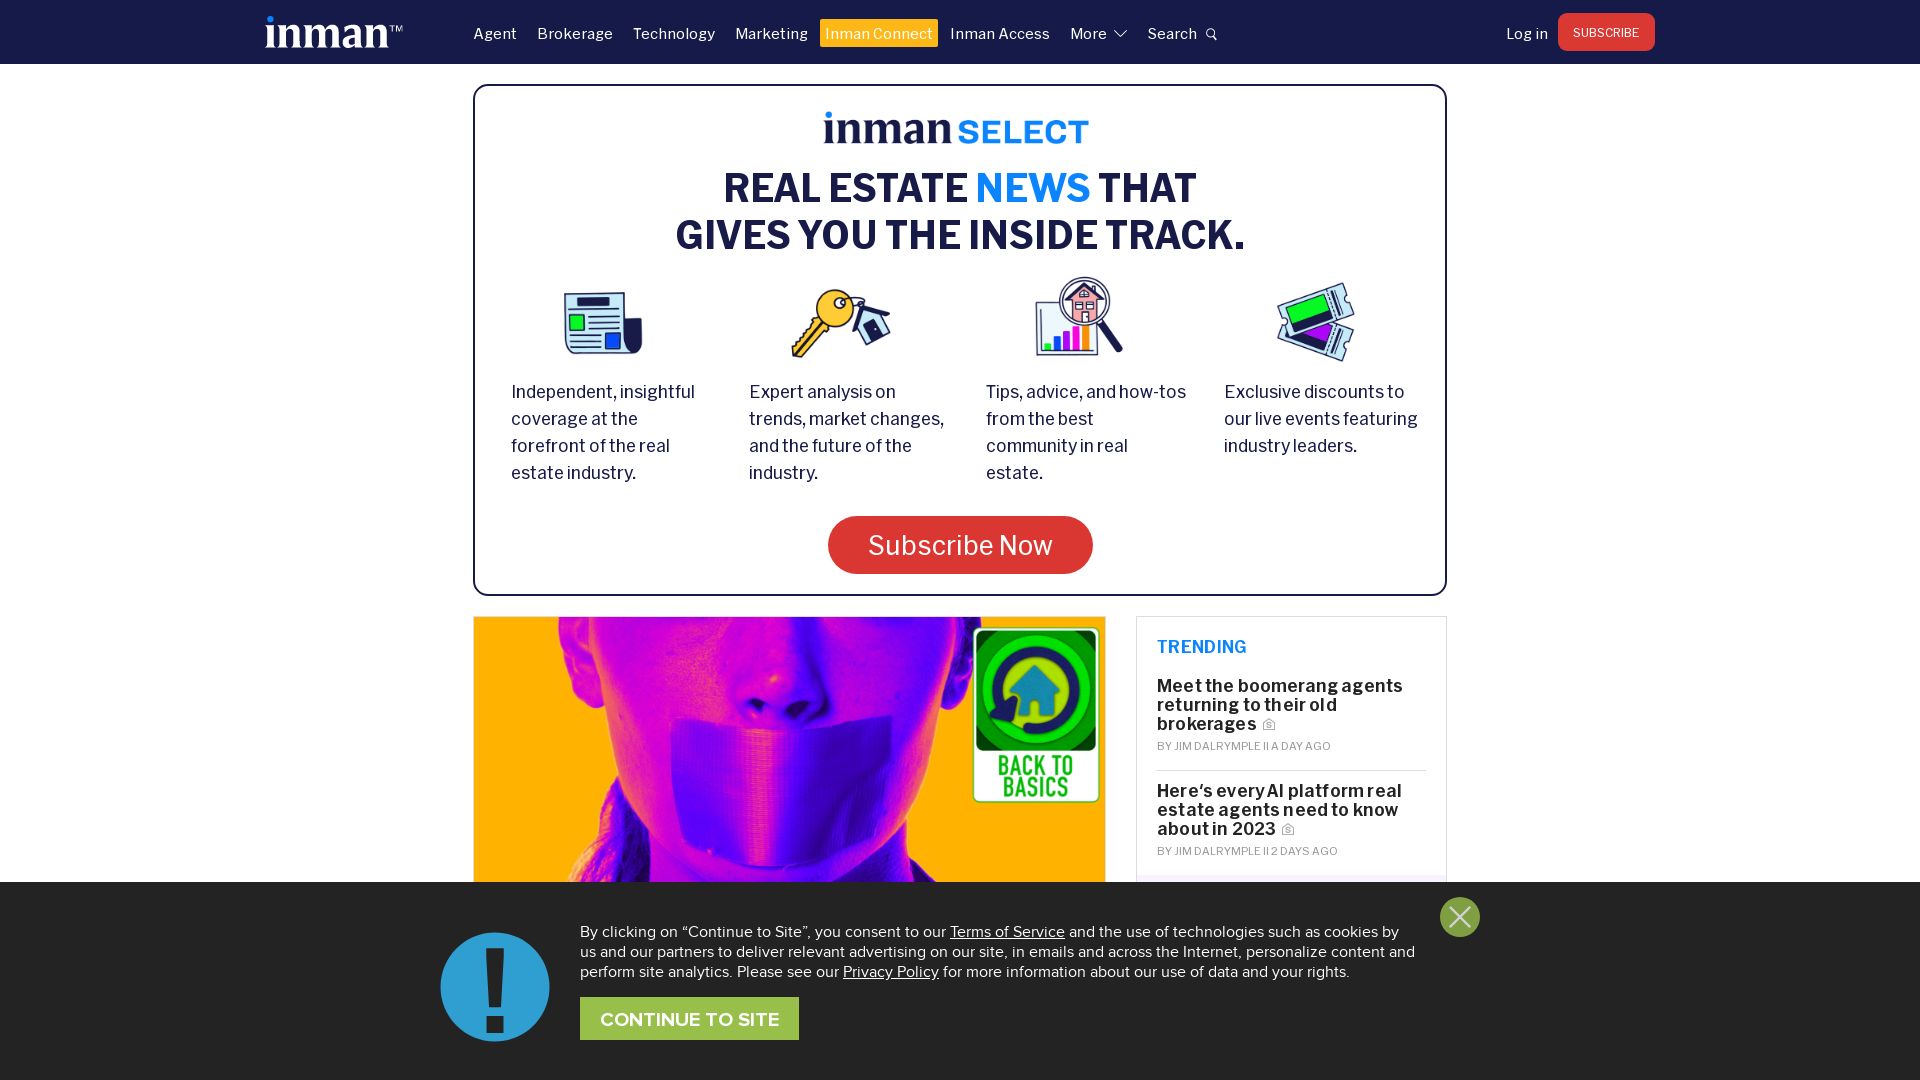 Website status inman.com is   ONLINE